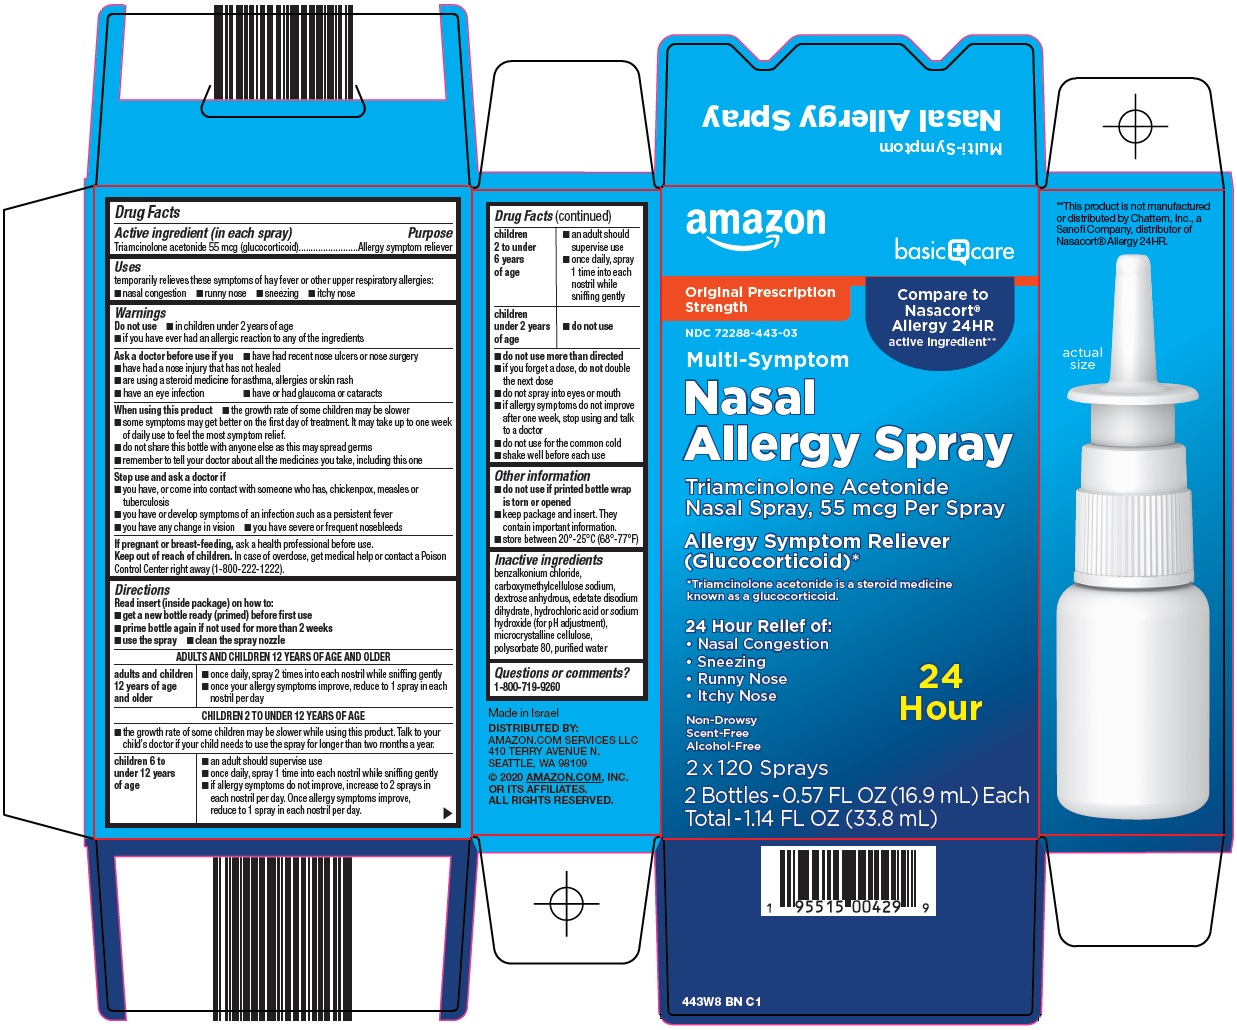 Nasal Allergy Spray Carton